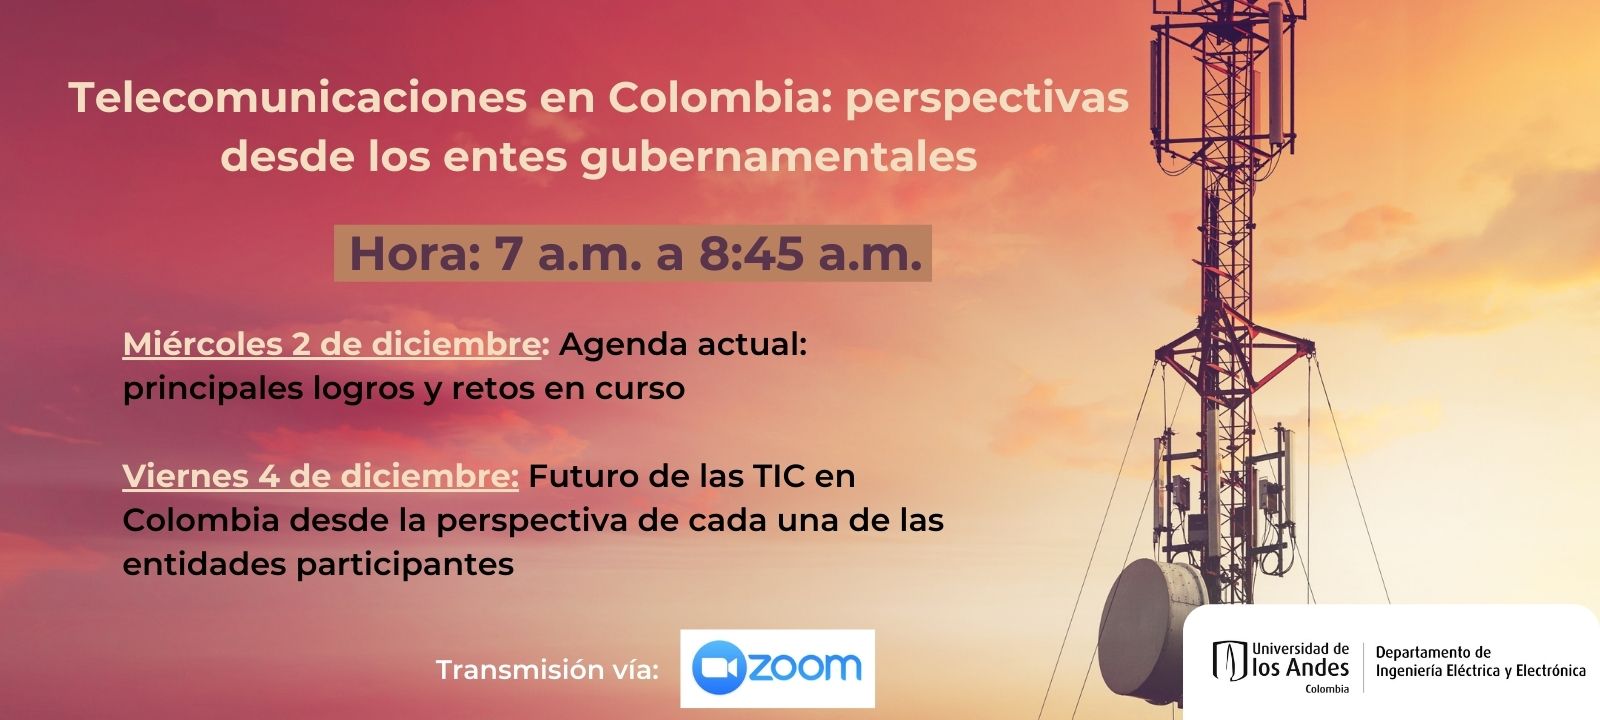 Telecomunicaciones en Colombia